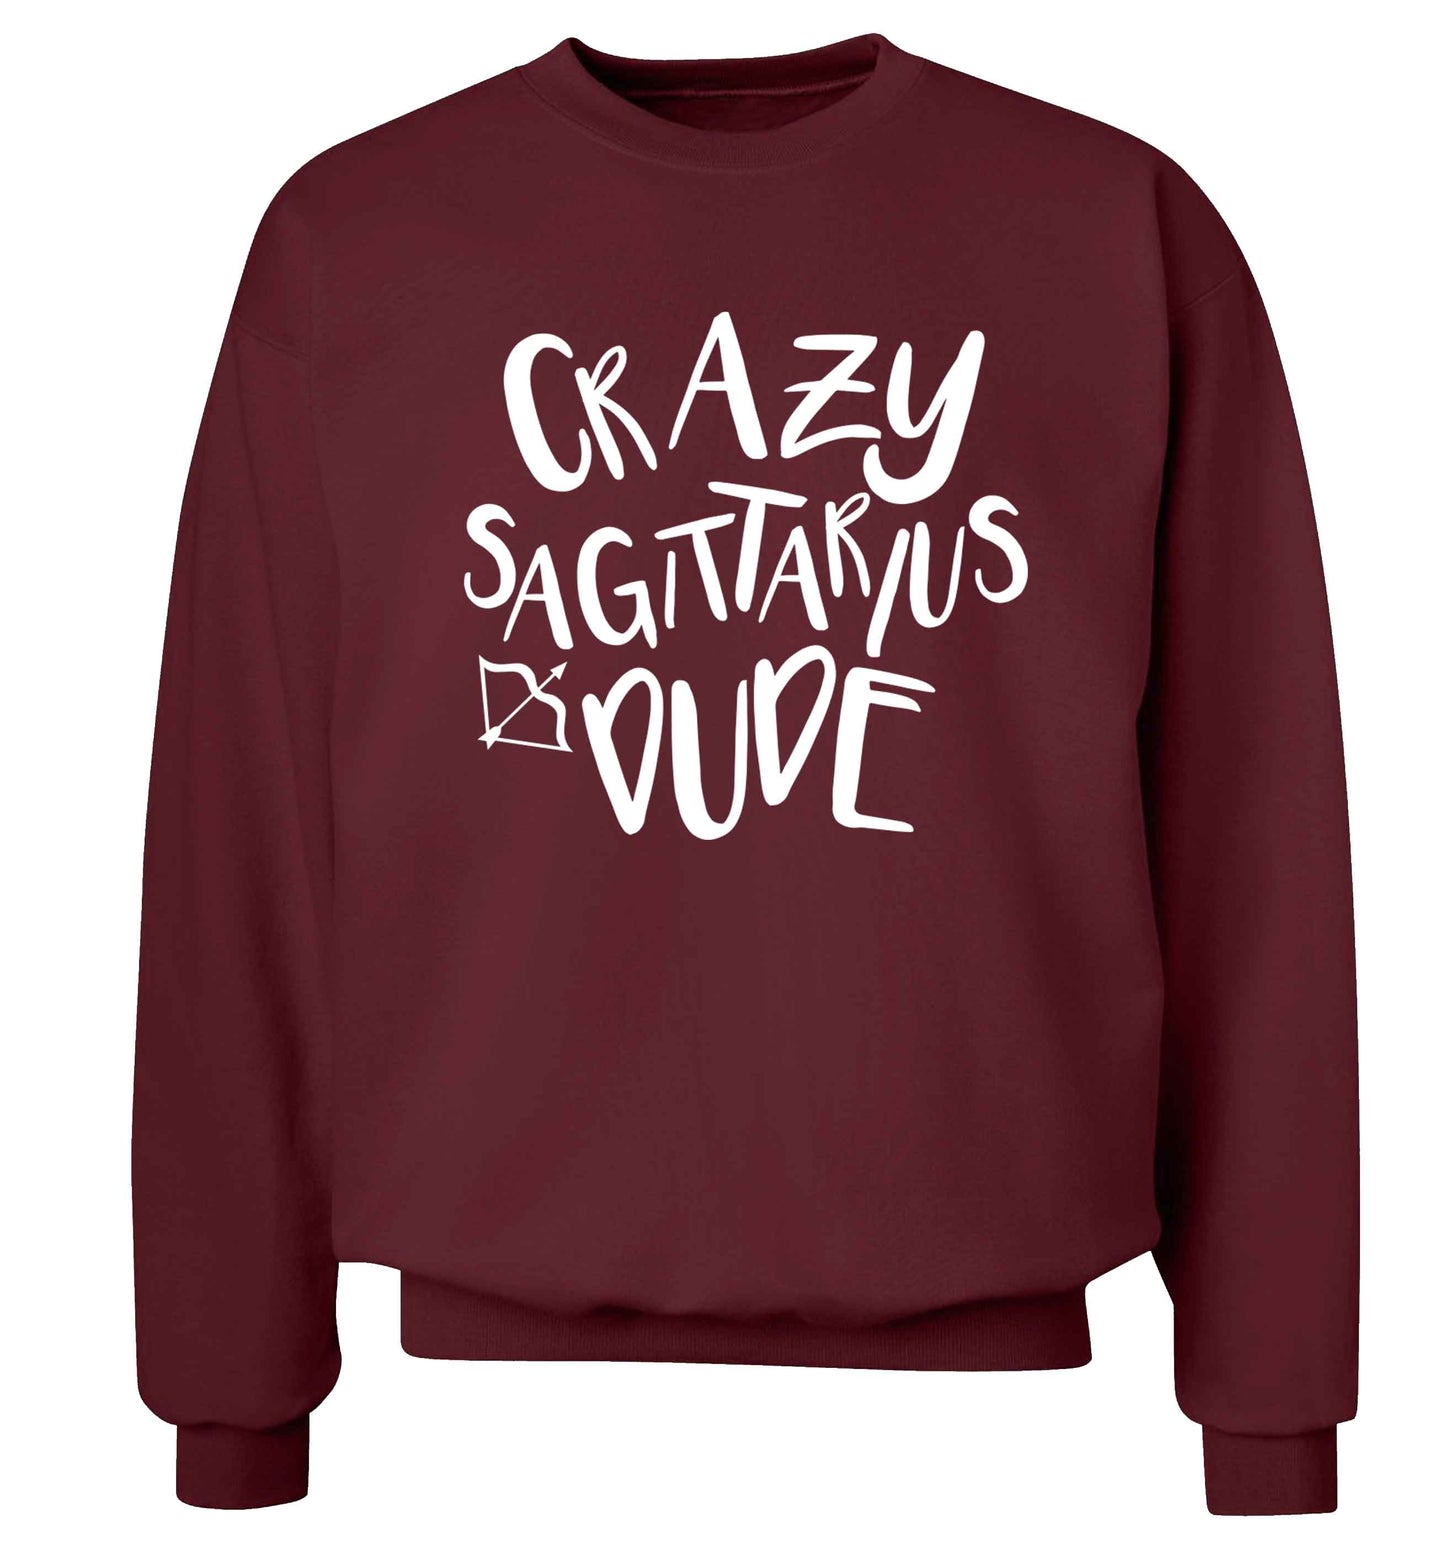 Crazy sagittarius dude Adult's unisex maroon Sweater 2XL